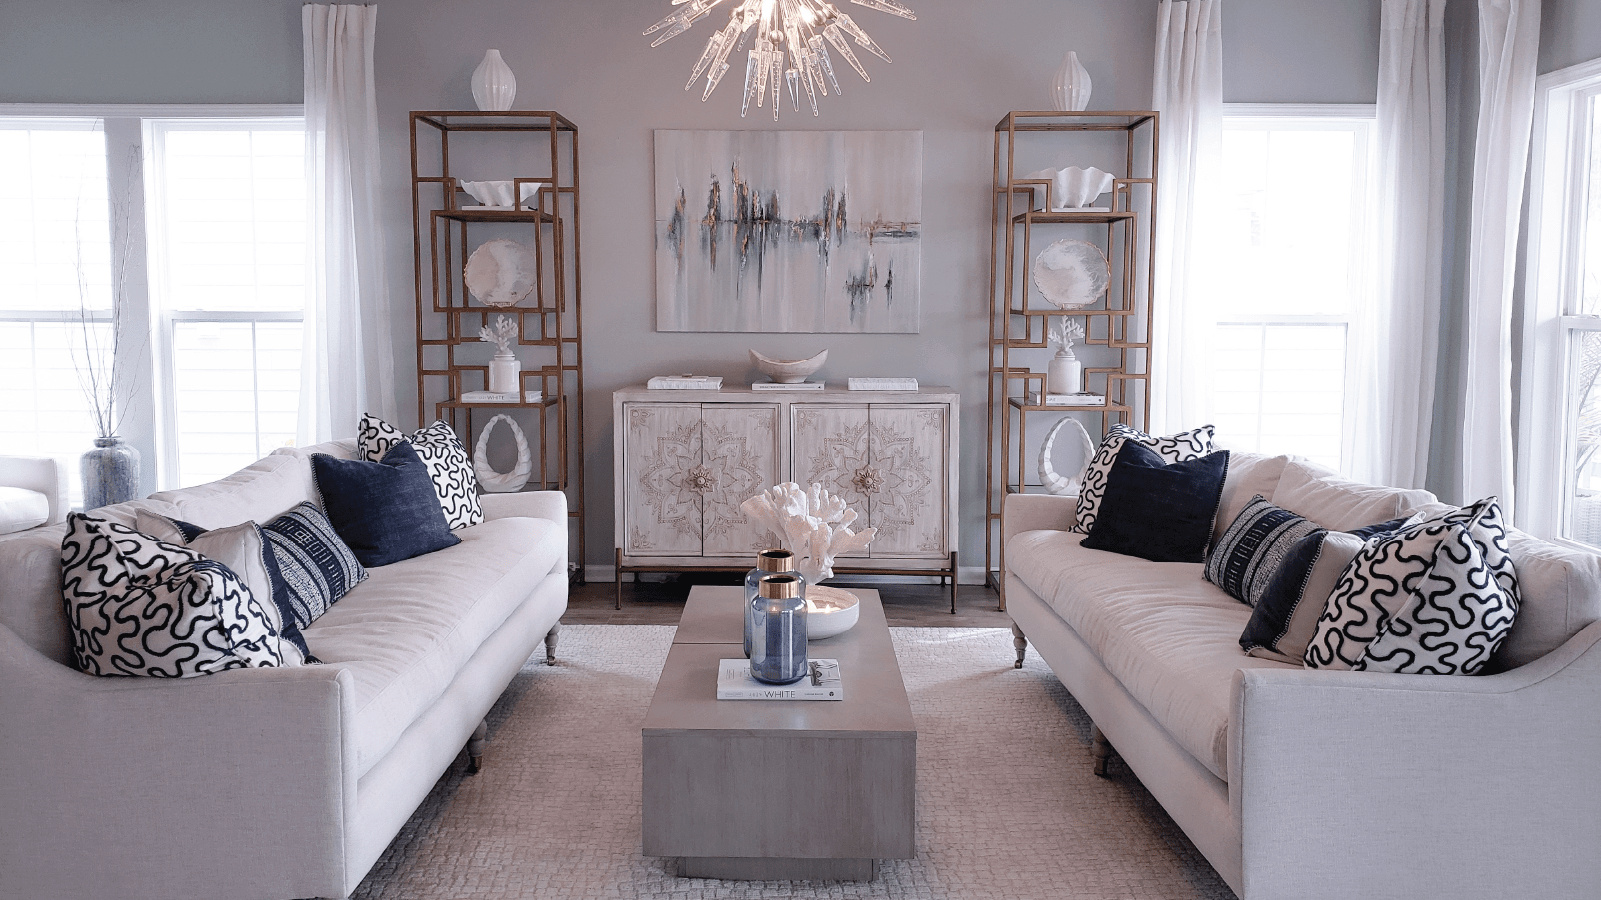 Rehaussez votre maison pour les Fêtes avec des idées de décoration luxueuses. | Montreal Lighting & Hardware